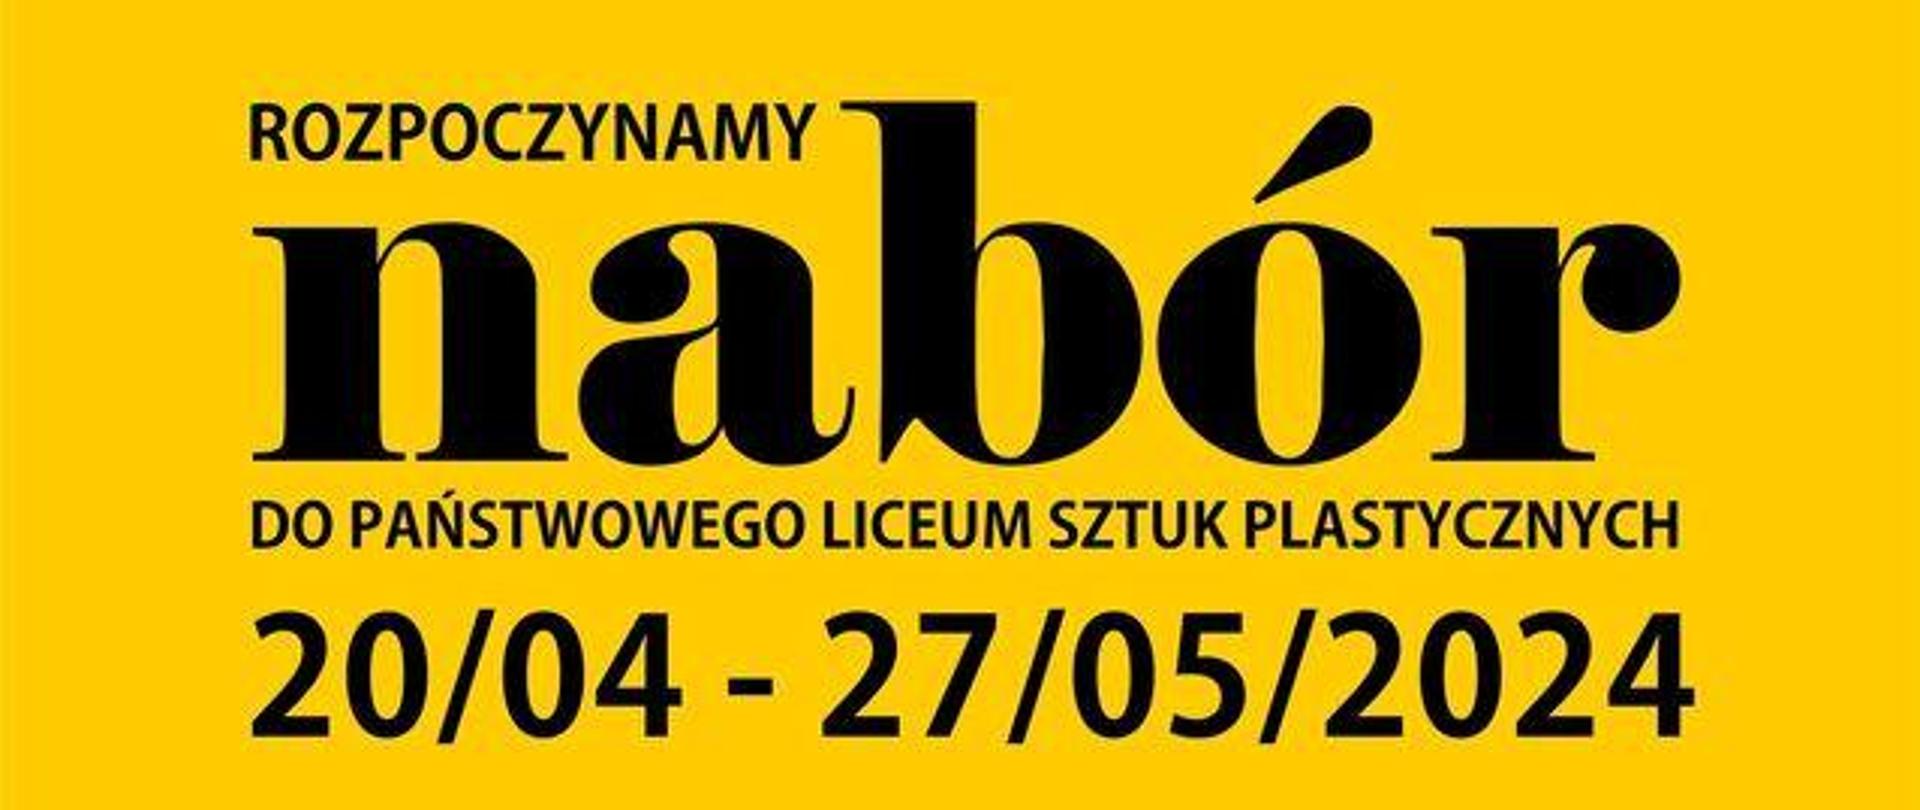 Plakat, na żółtym tle napis: Rozpoczynamy nabór do Państwowego Liceum Sztuk Plastycznych 20/04-27/05/2024